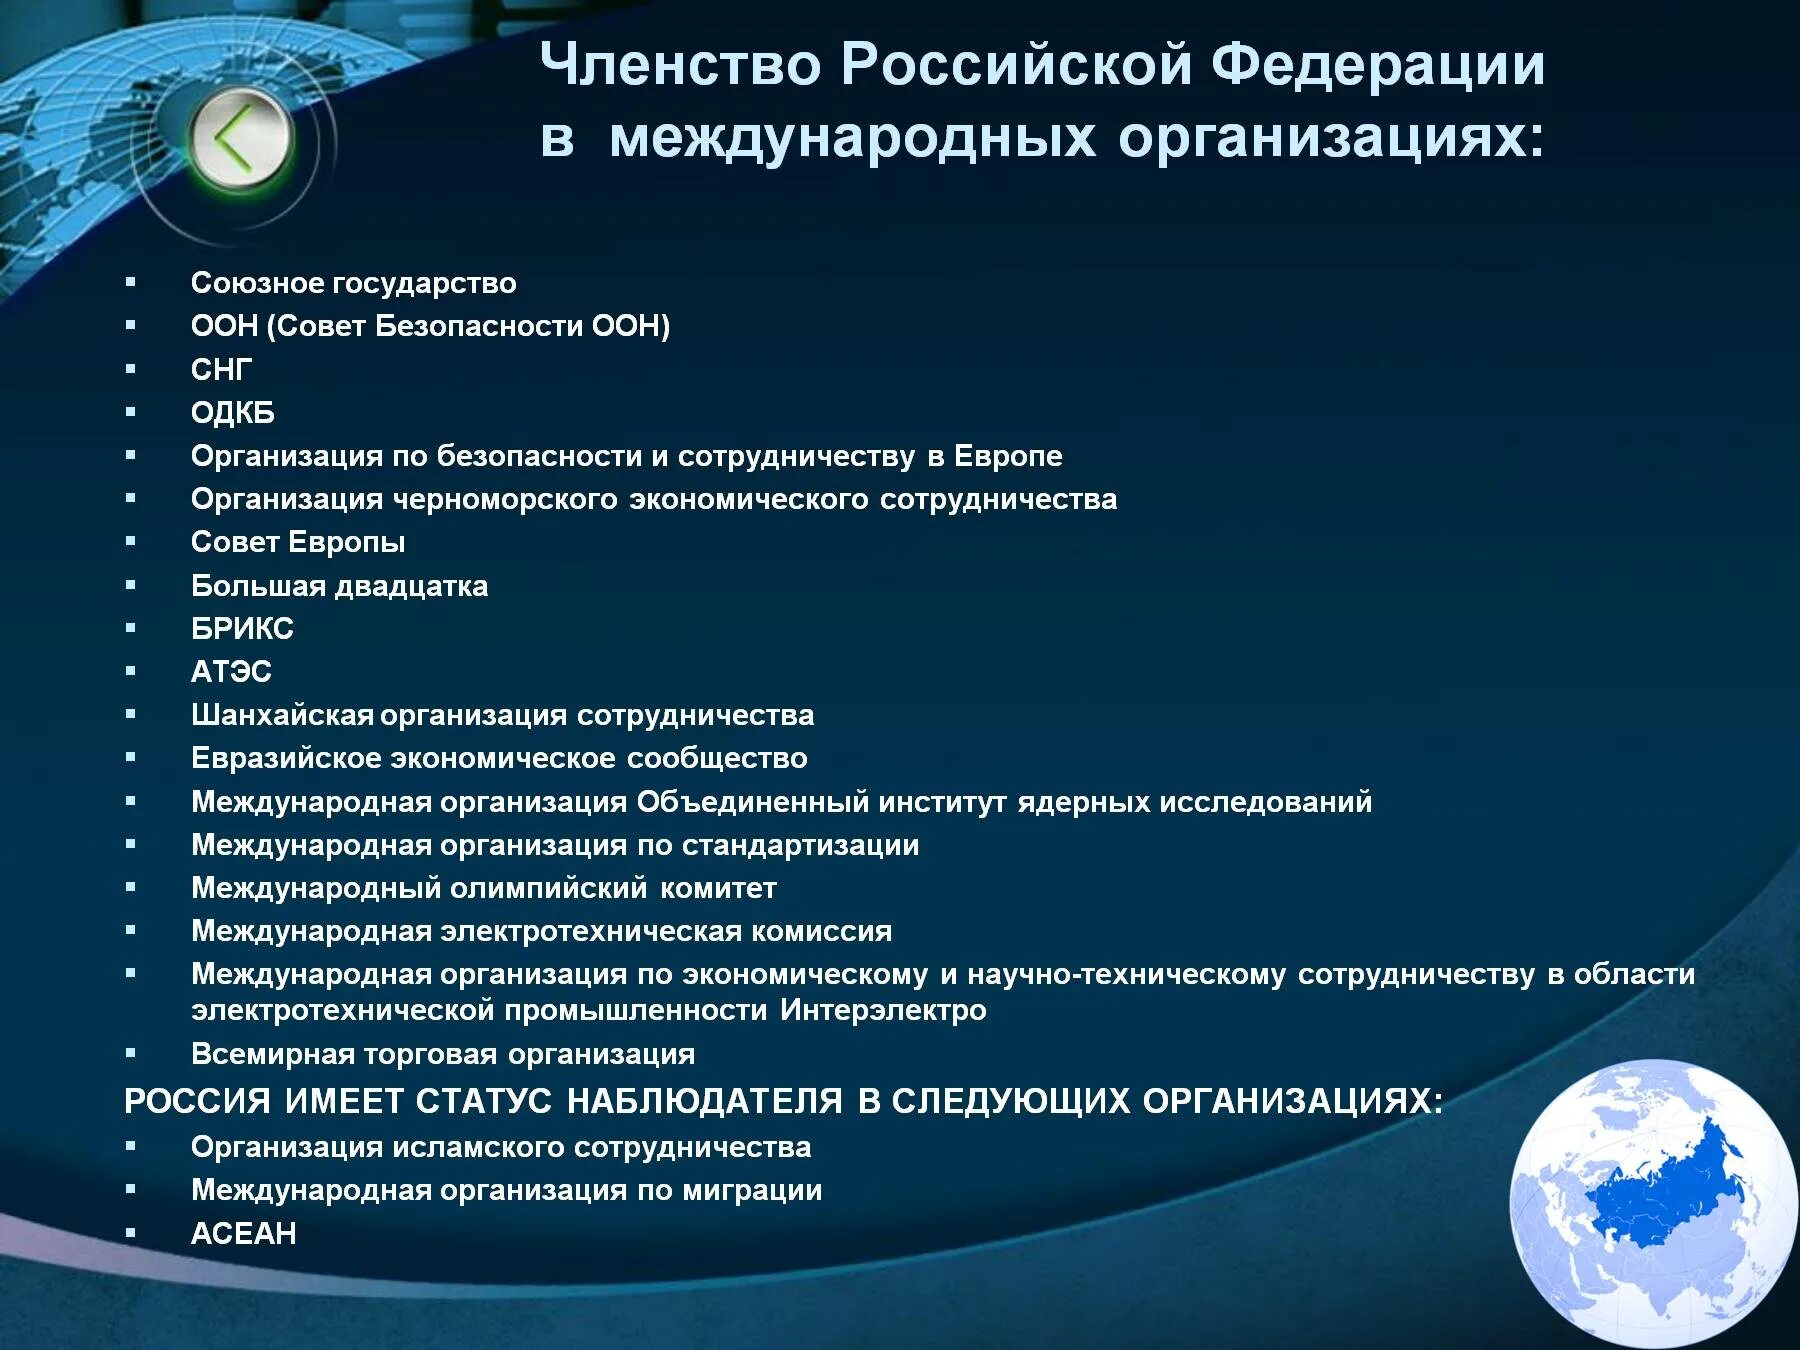 Участие российской федерации в международном организациях